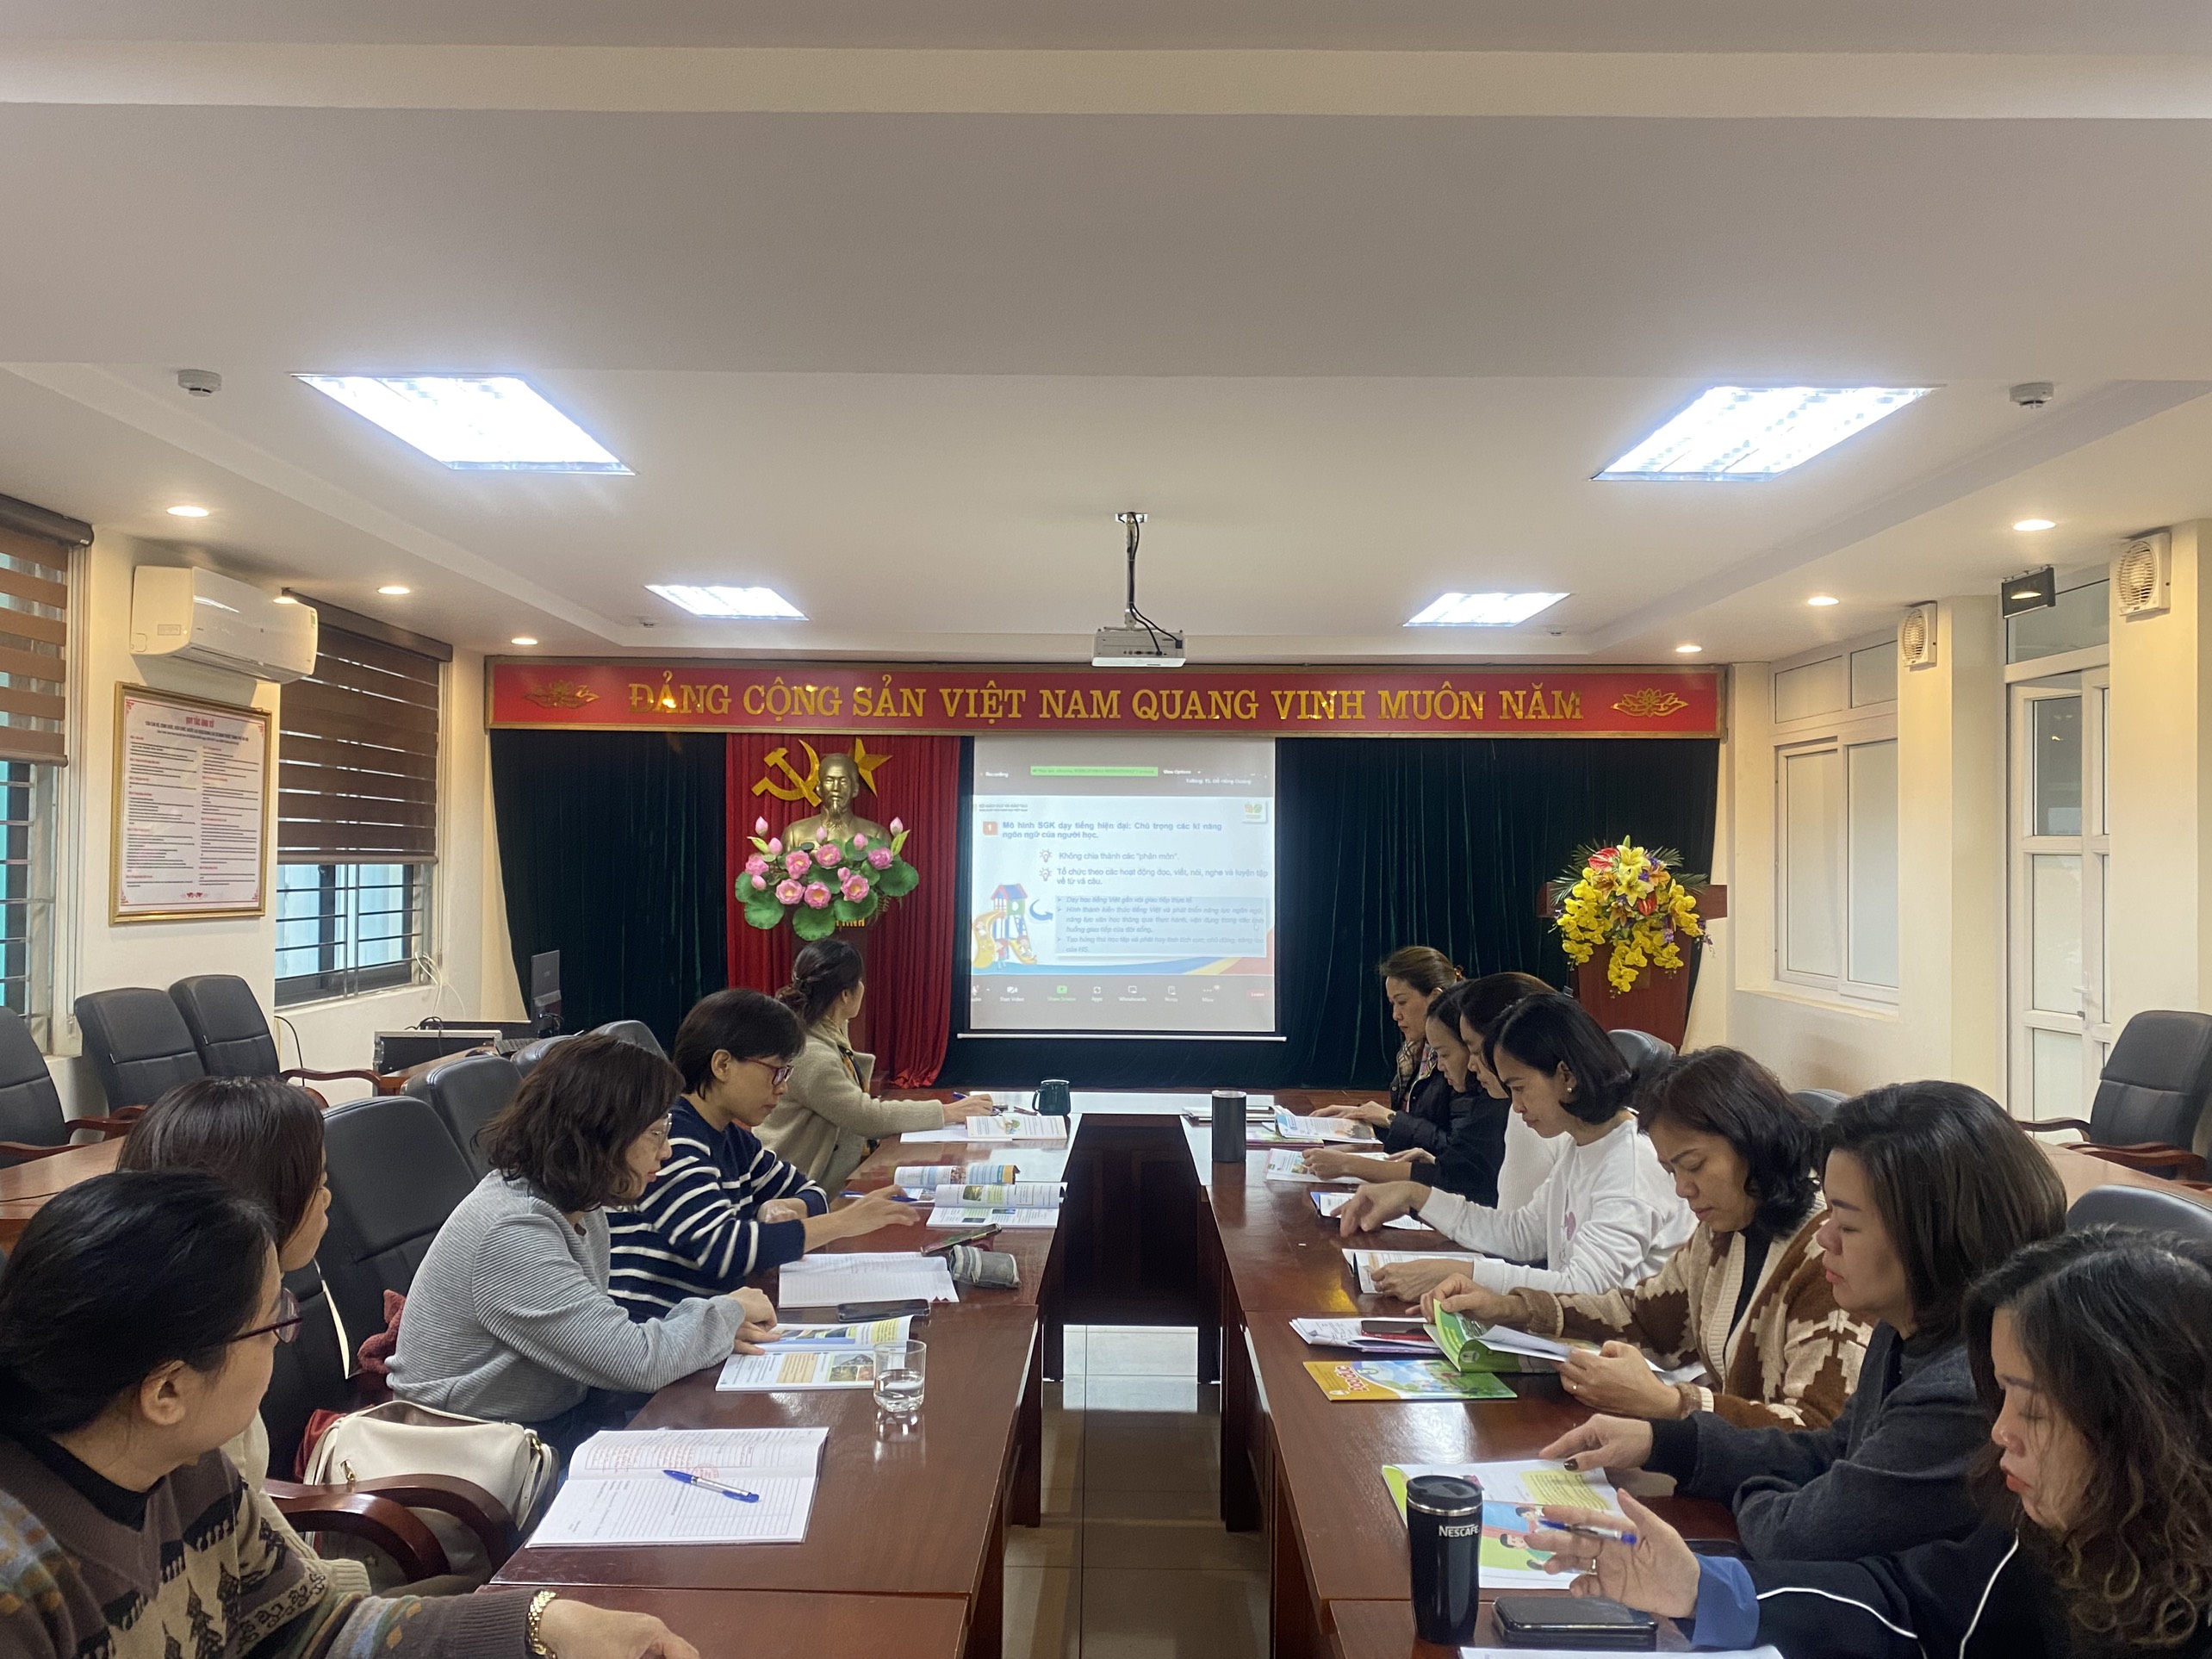 Trường TH Việt Nam - Cu Ba tham dự “Tập huấn, giới thiệu sách giáo khoa lớp 5” chương trình GDPT 2018.